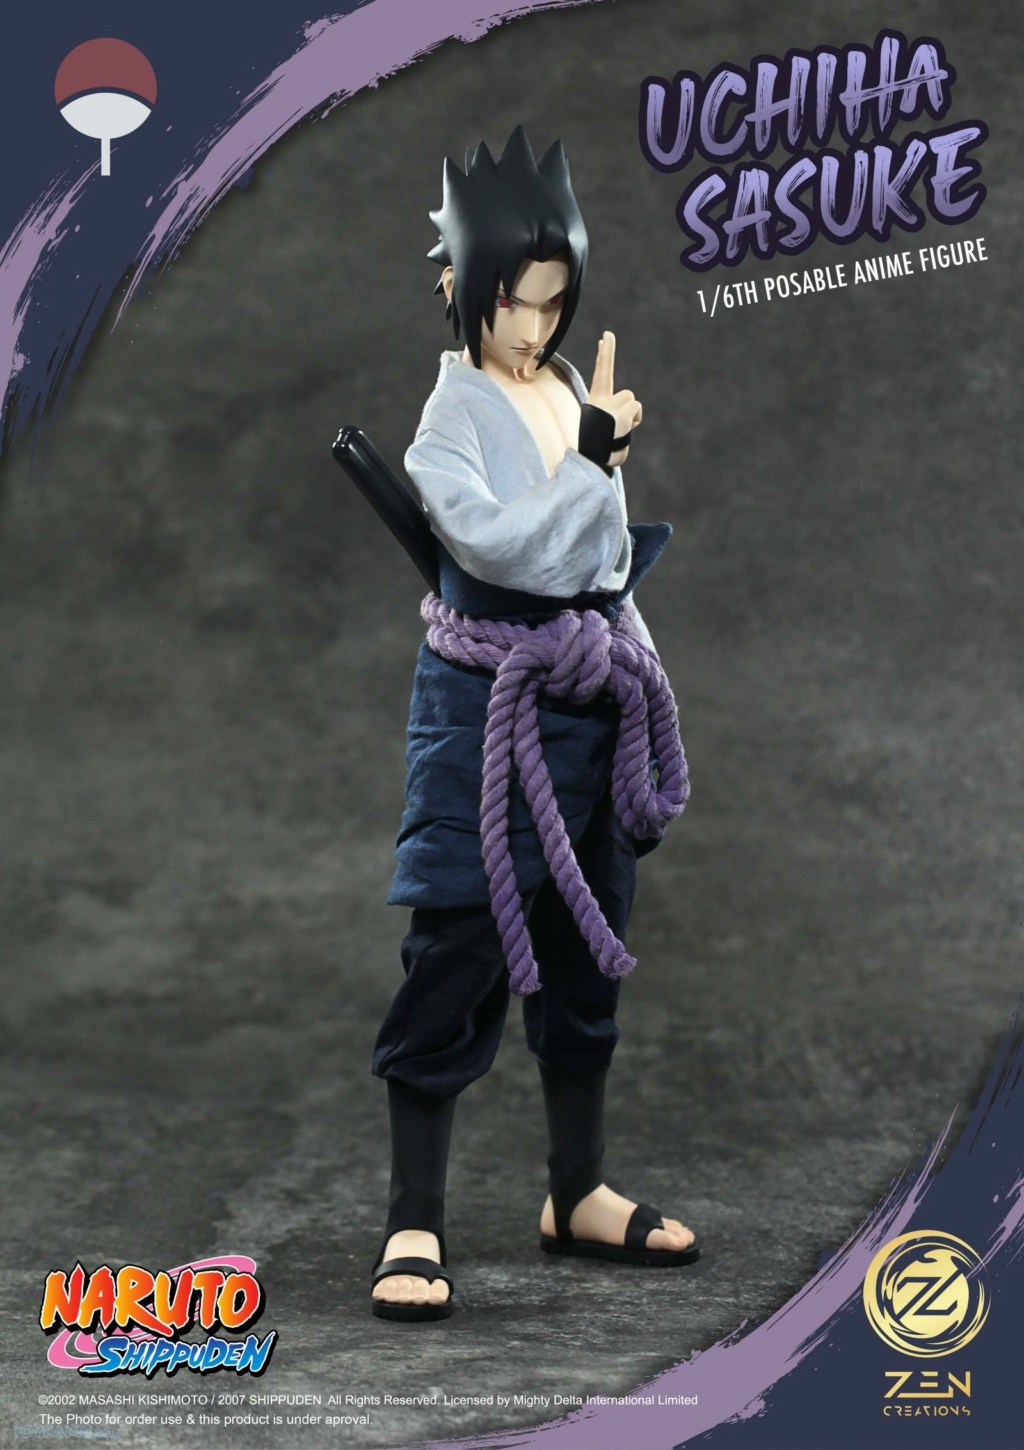 NEW PRODUCT: Zen Creations: PAF003 1/6 Scale Sasuke Uchiha Anime Figure 14620232